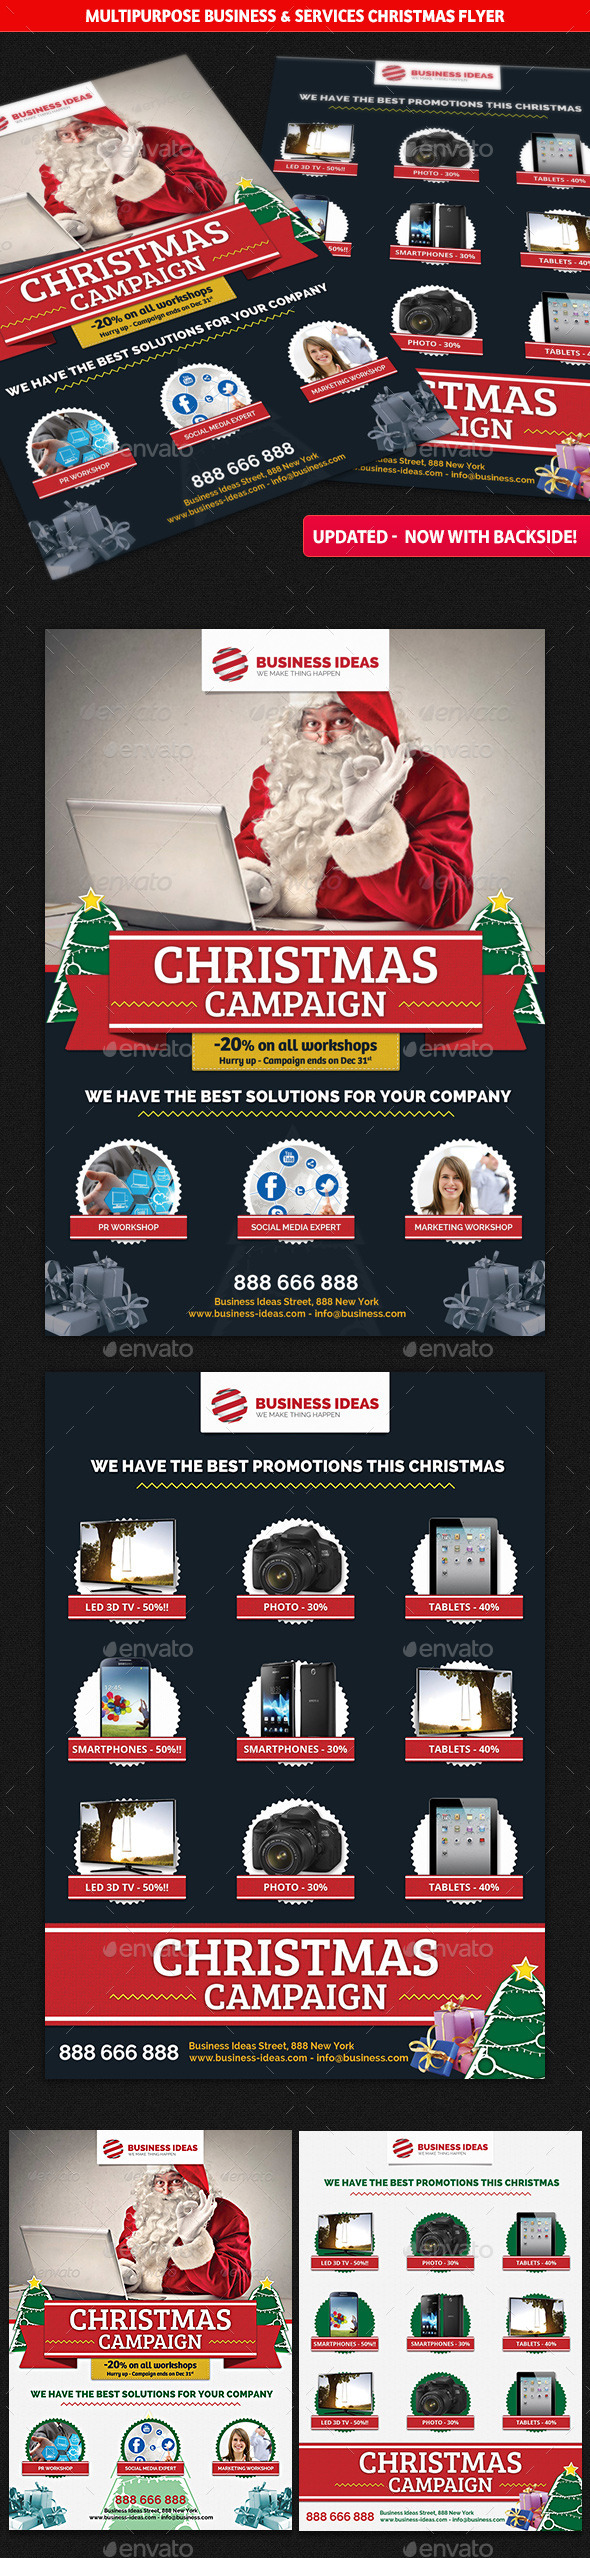 Multipurpose Business Christmas Flyer